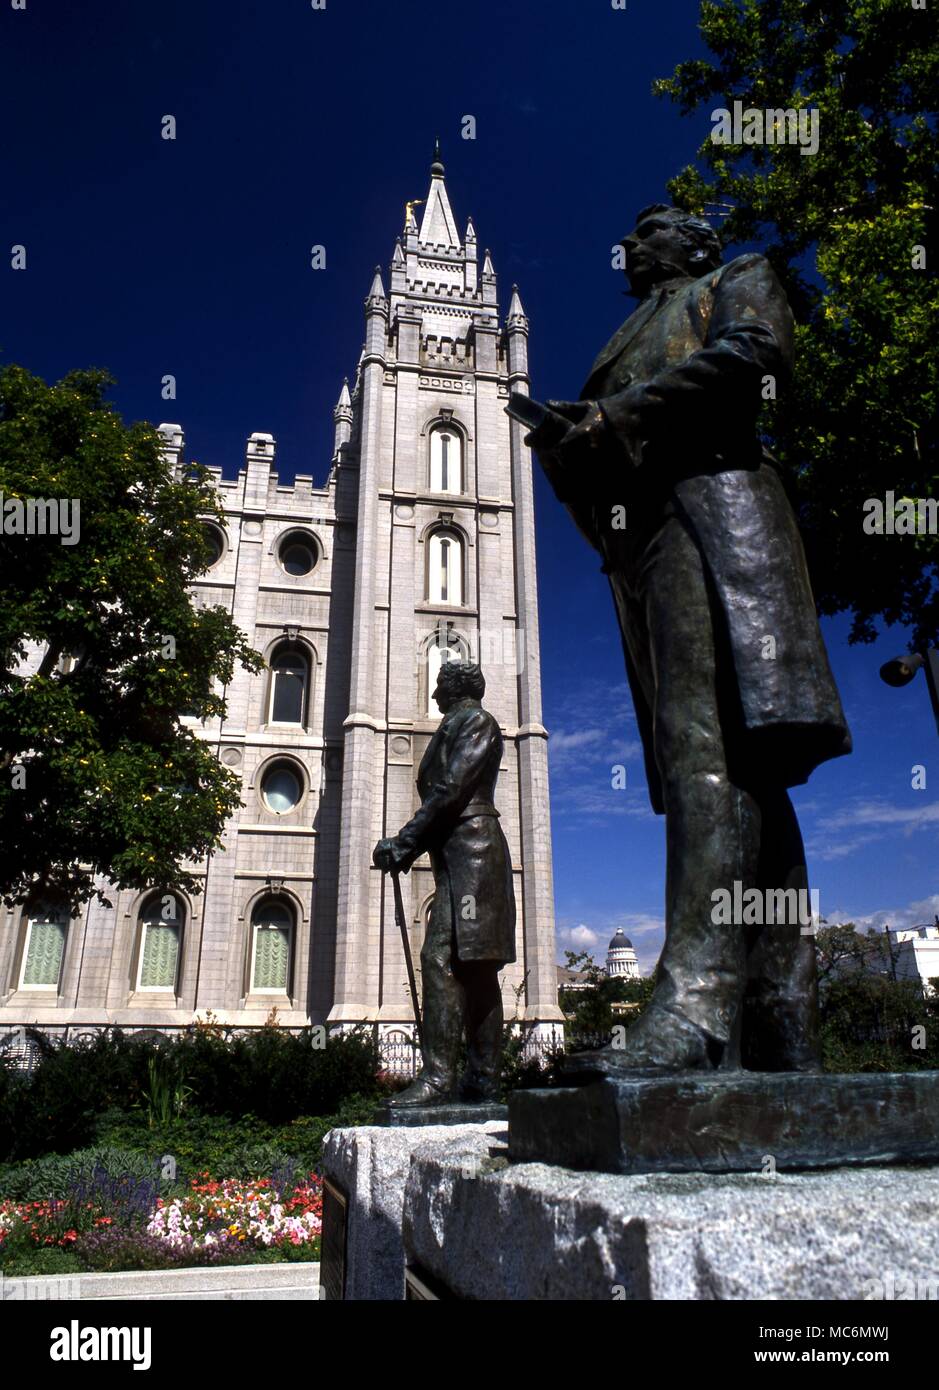 Los mormones, Joseph Smith. El profeta Smith, nacido el 23 de diciembre de 1805, fue asesinado el 27 de junio de 1844. Estatua en razón del Templo de Salt Lake City. Foto de stock